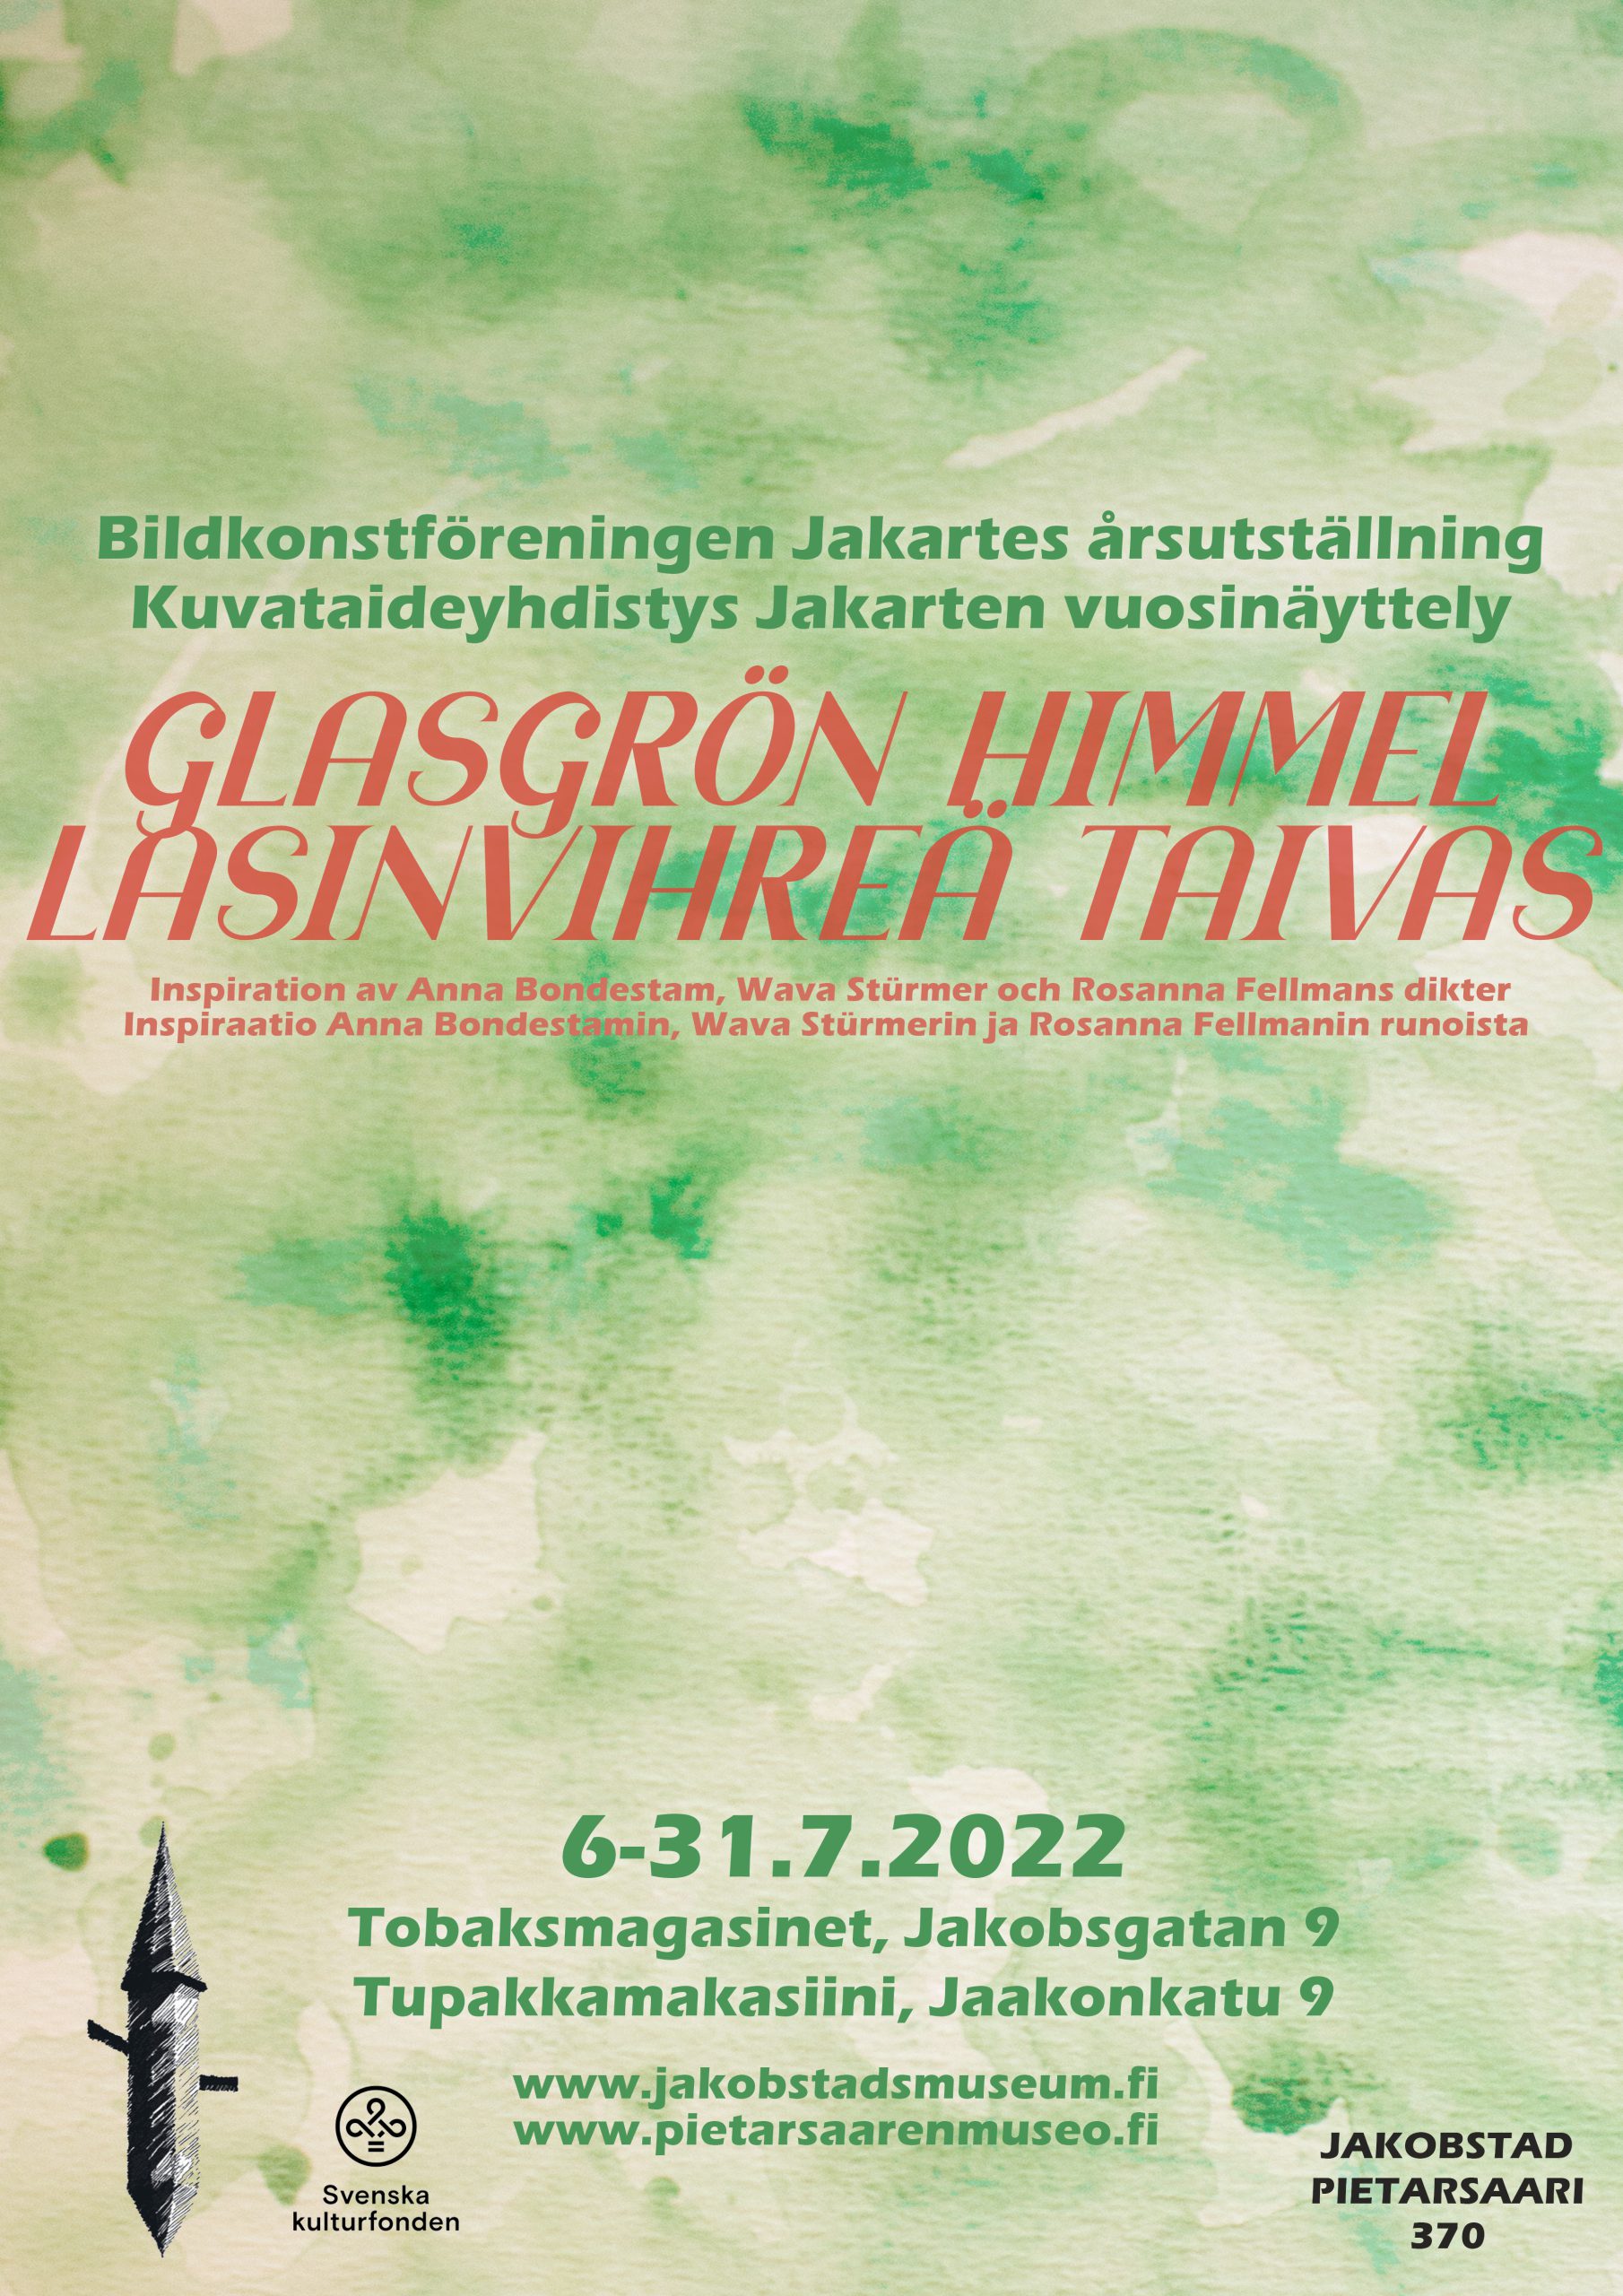 Glasgrön himmel, Årsutställning 2022